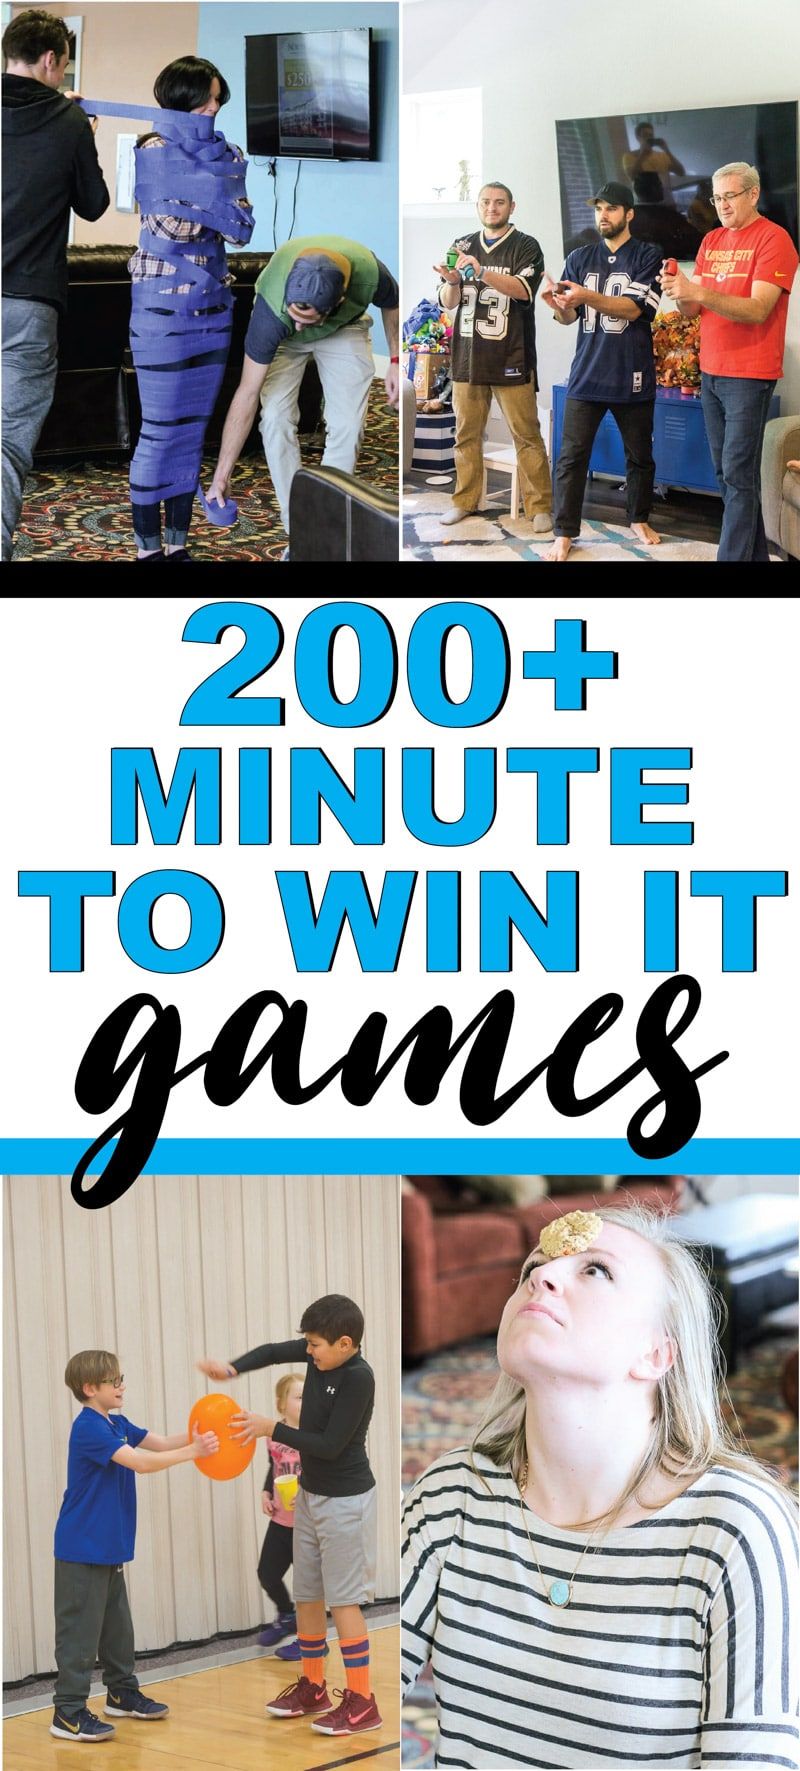 Το καλύτερο λεπτό για να κερδίσετε παιχνίδια για παιδιά, για εφήβους ή ακόμα και για ενήλικες! Πάνω από 200+ διασκεδαστικά παιχνίδια που είναι ιδανικά για οικογενειακή επανένωση, για σχολείο, για σχολικά πάρτι και πολλά άλλα! Εύκολα παιχνίδια, διασκεδαστικά ομαδικά παιχνίδια και πολλά άλλα!